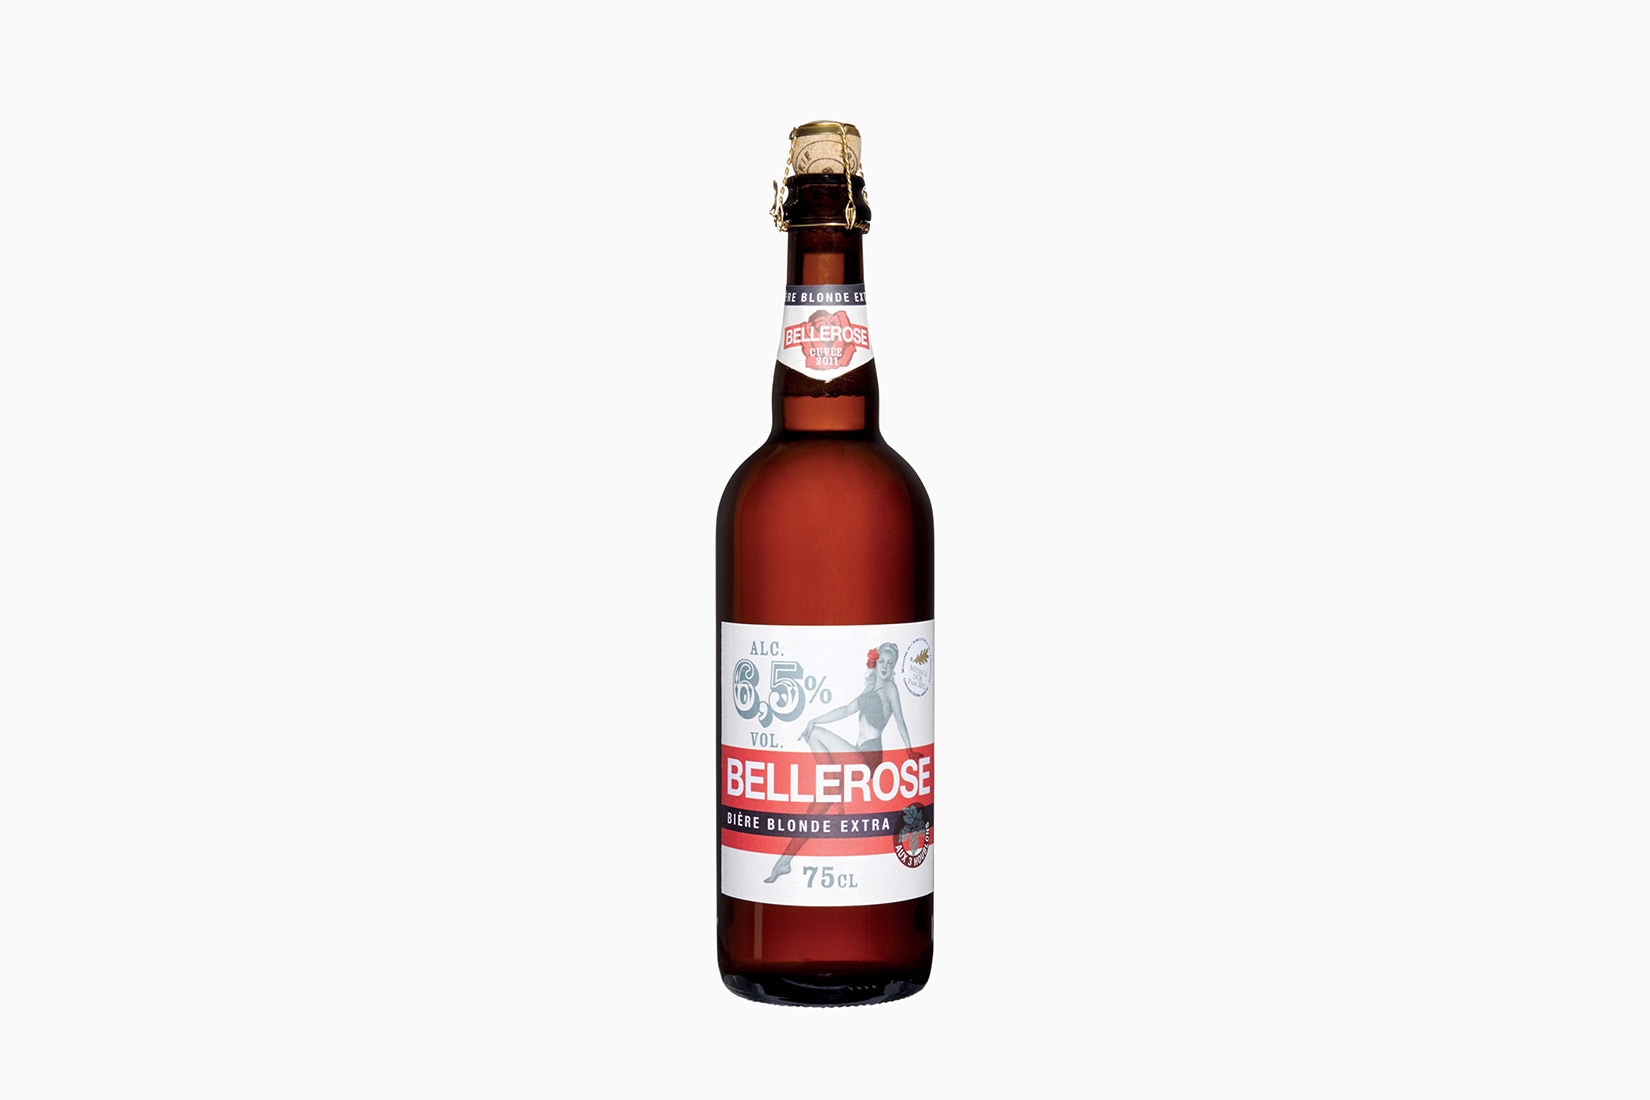 meilleures marques de bière bellerose biere blonde - Luxe Digital